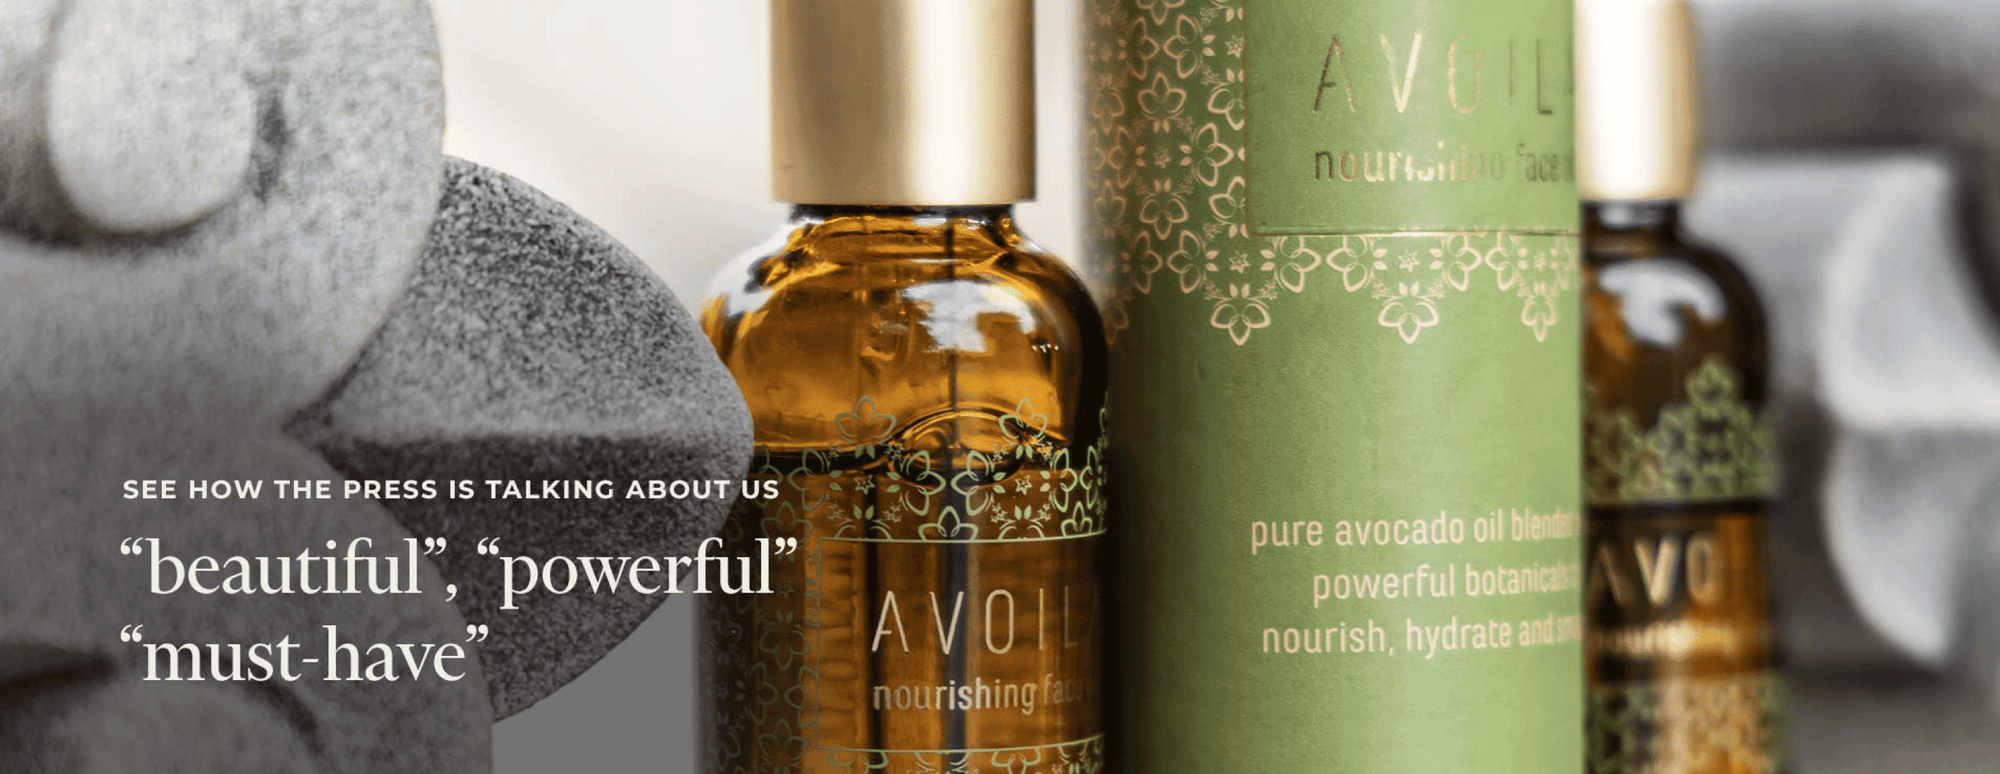 Press on Avoila Nourishing Face Oil